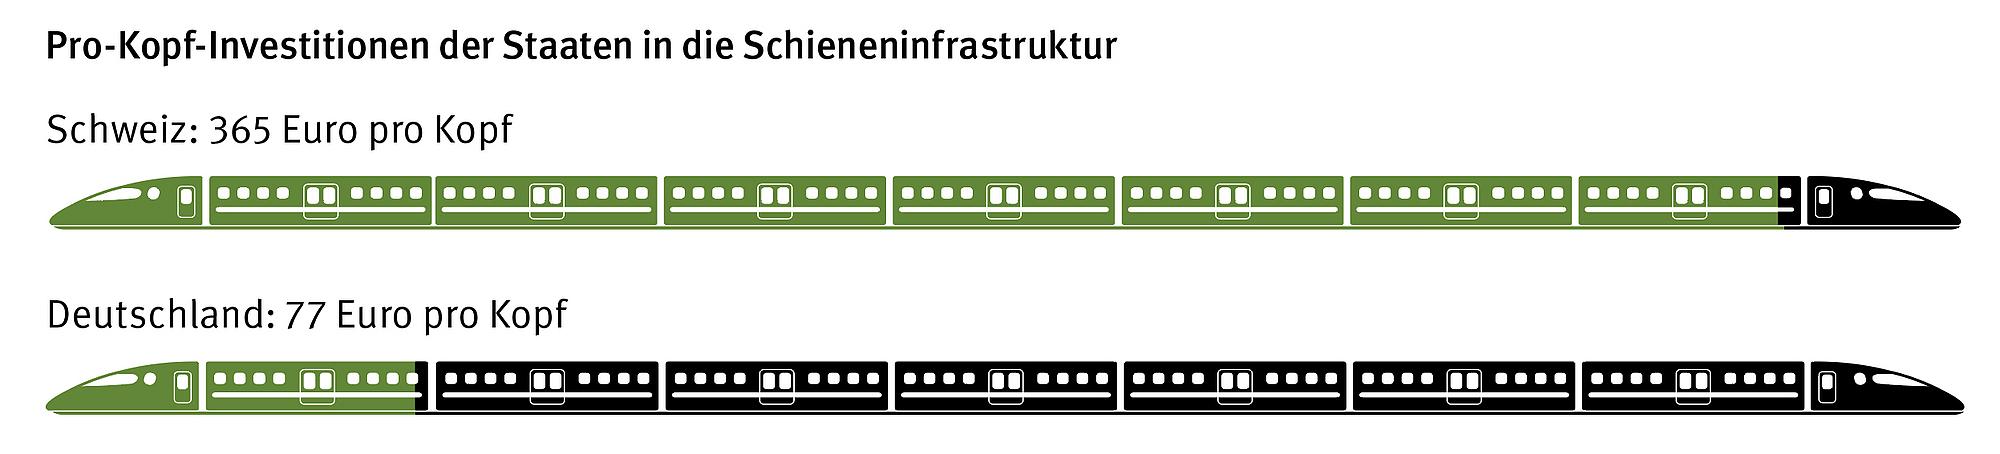 Grafik pro-Kopf-Investitonen der Staaten in die Schieneninfrastruktur. Vergleich der Schweiz mit Deutschland.